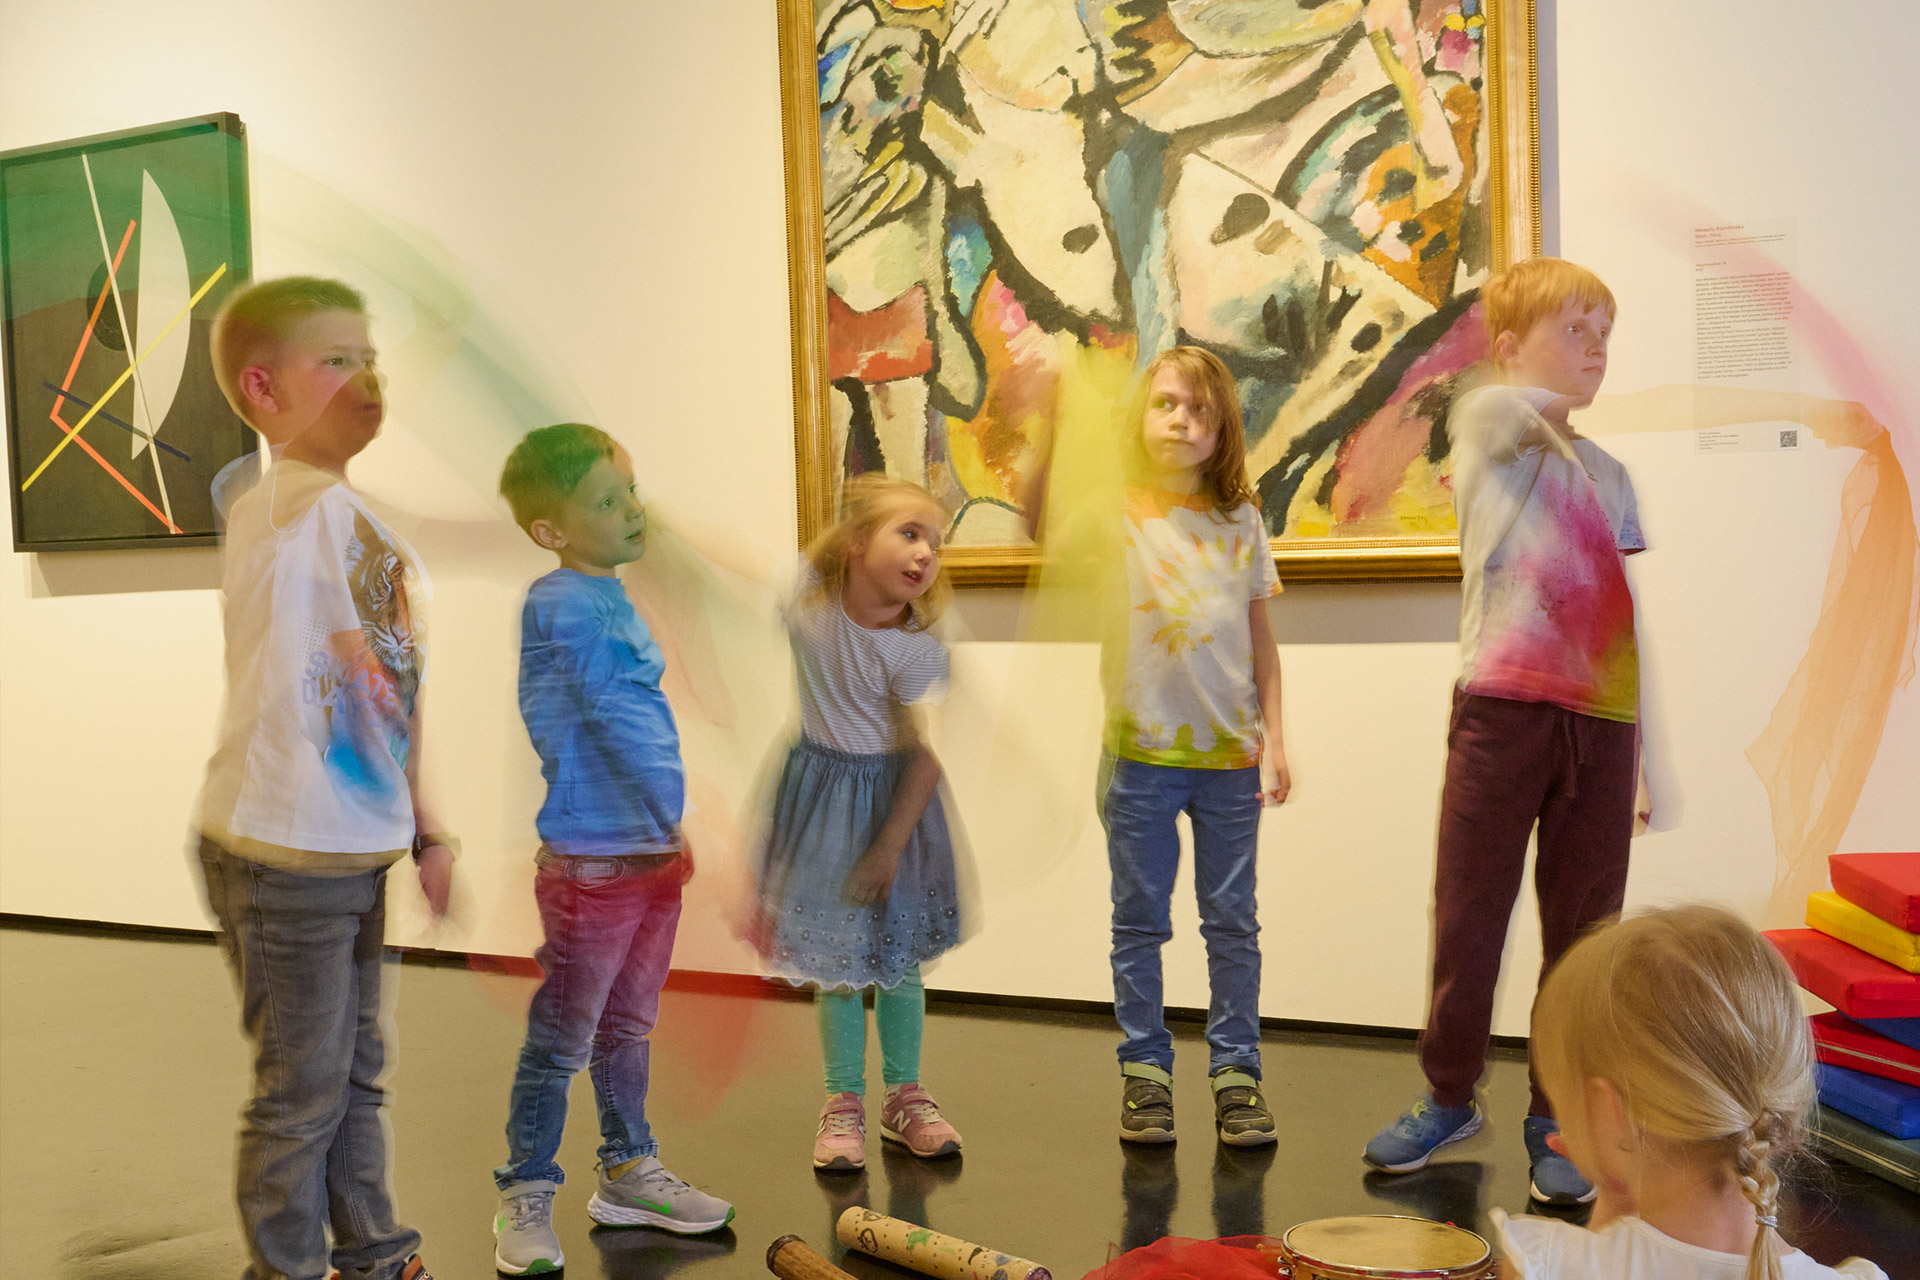 Mehrere Kinder stehen in der Ausstellung vor einem Werk von Kandinsky und schwingen mit Tüchern.